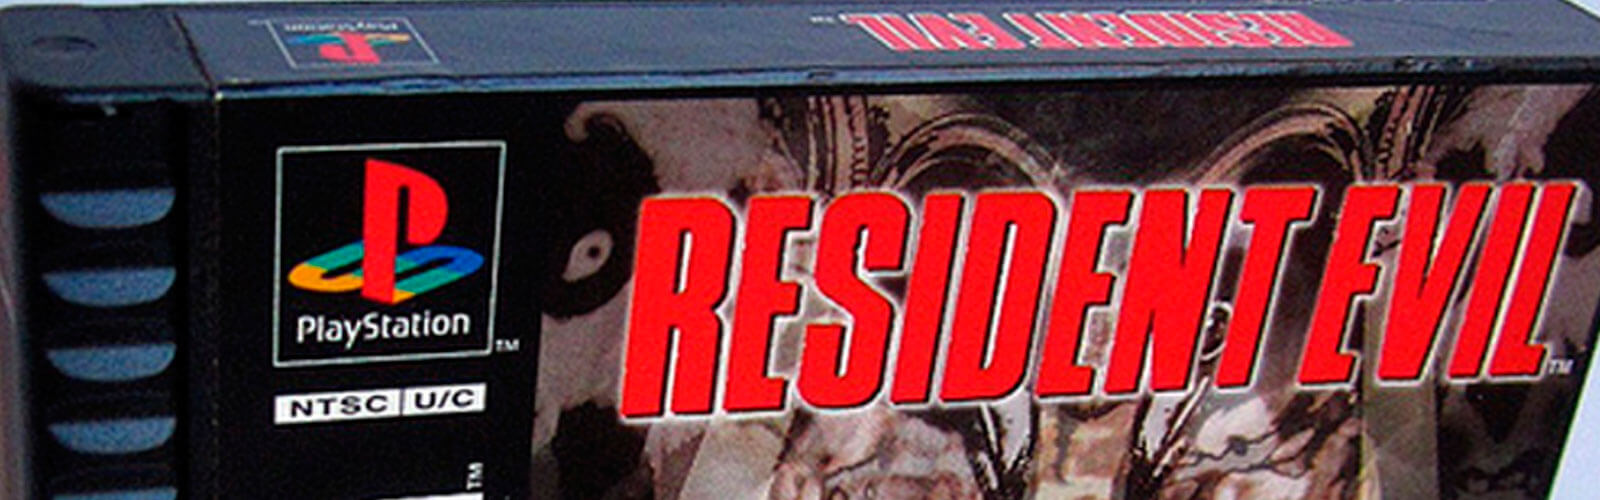 Aquisição - Resident Evil versão Long box (PS1) Cover